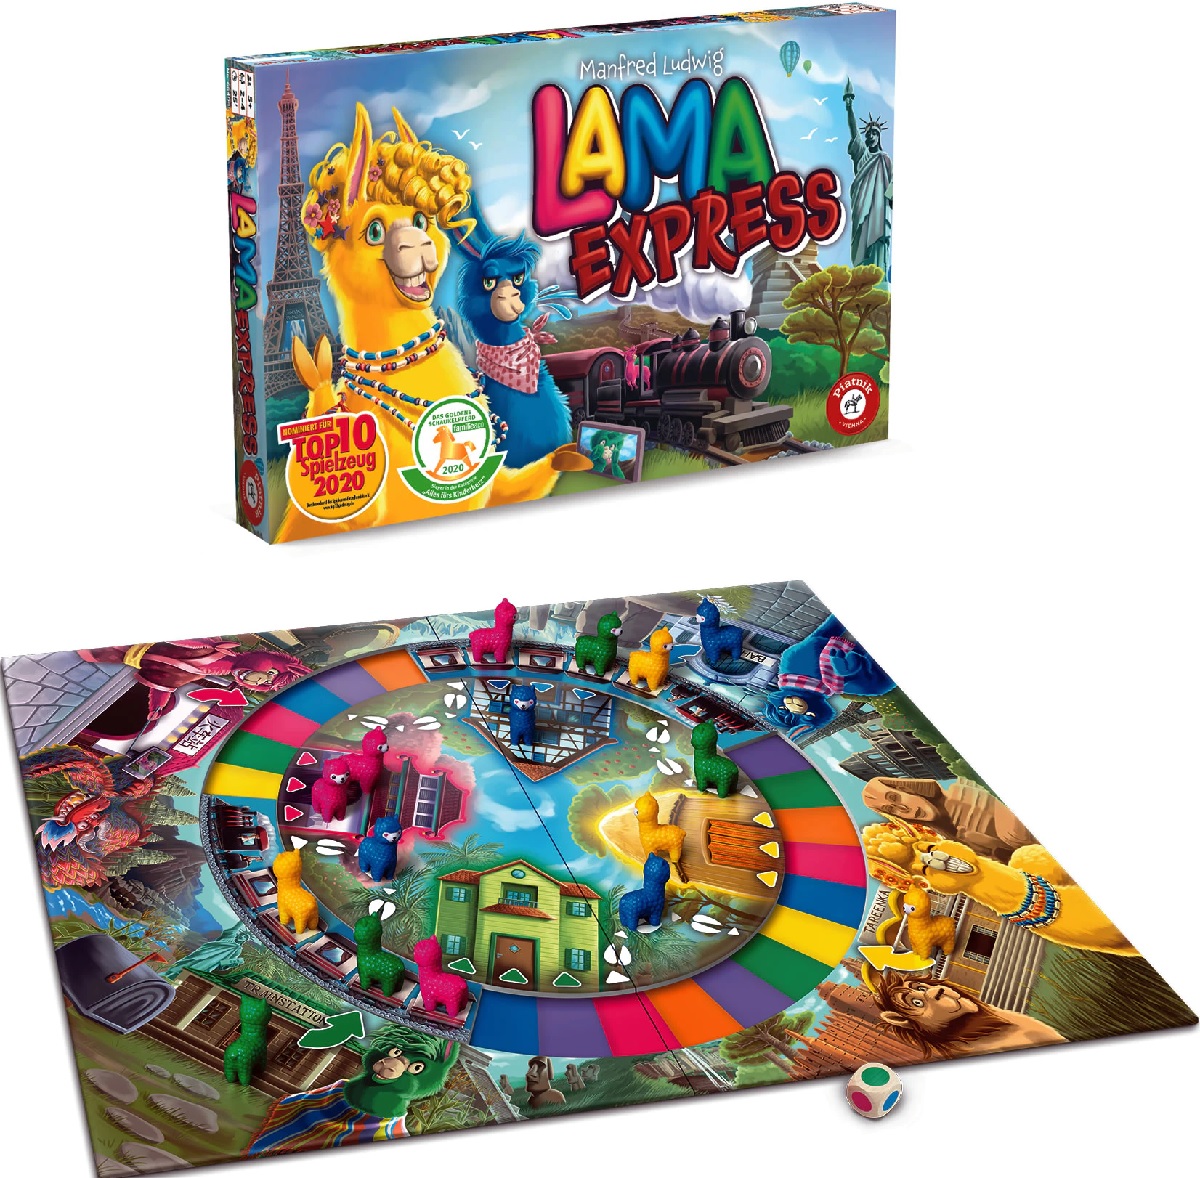 Joc: Lama Express